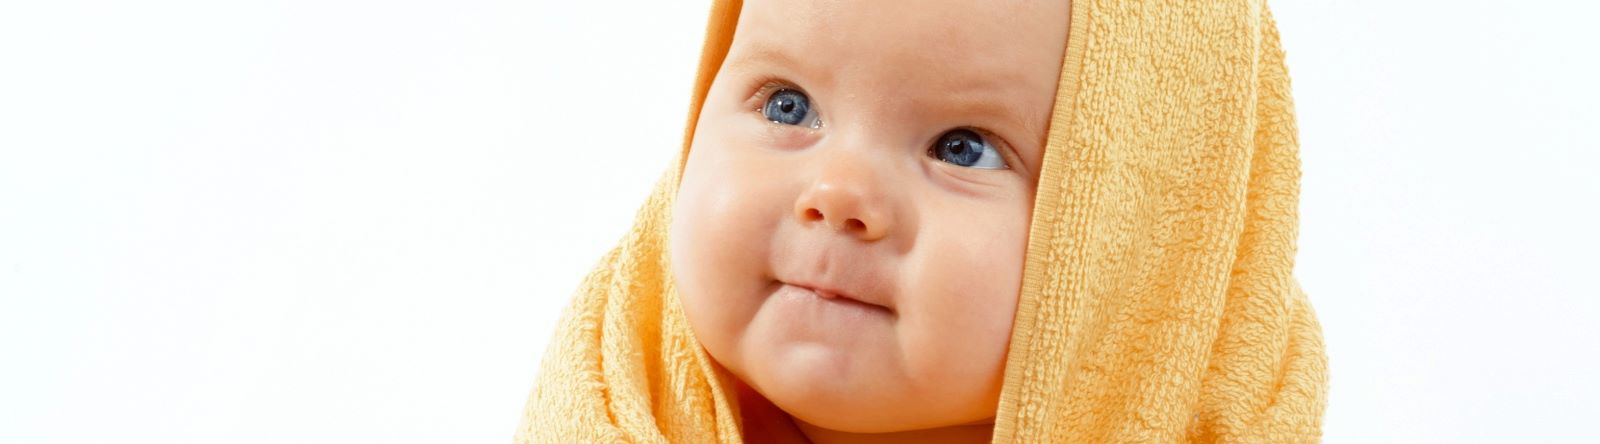 Lavagem ao nariz do bebé com soro e seringa: como fazer